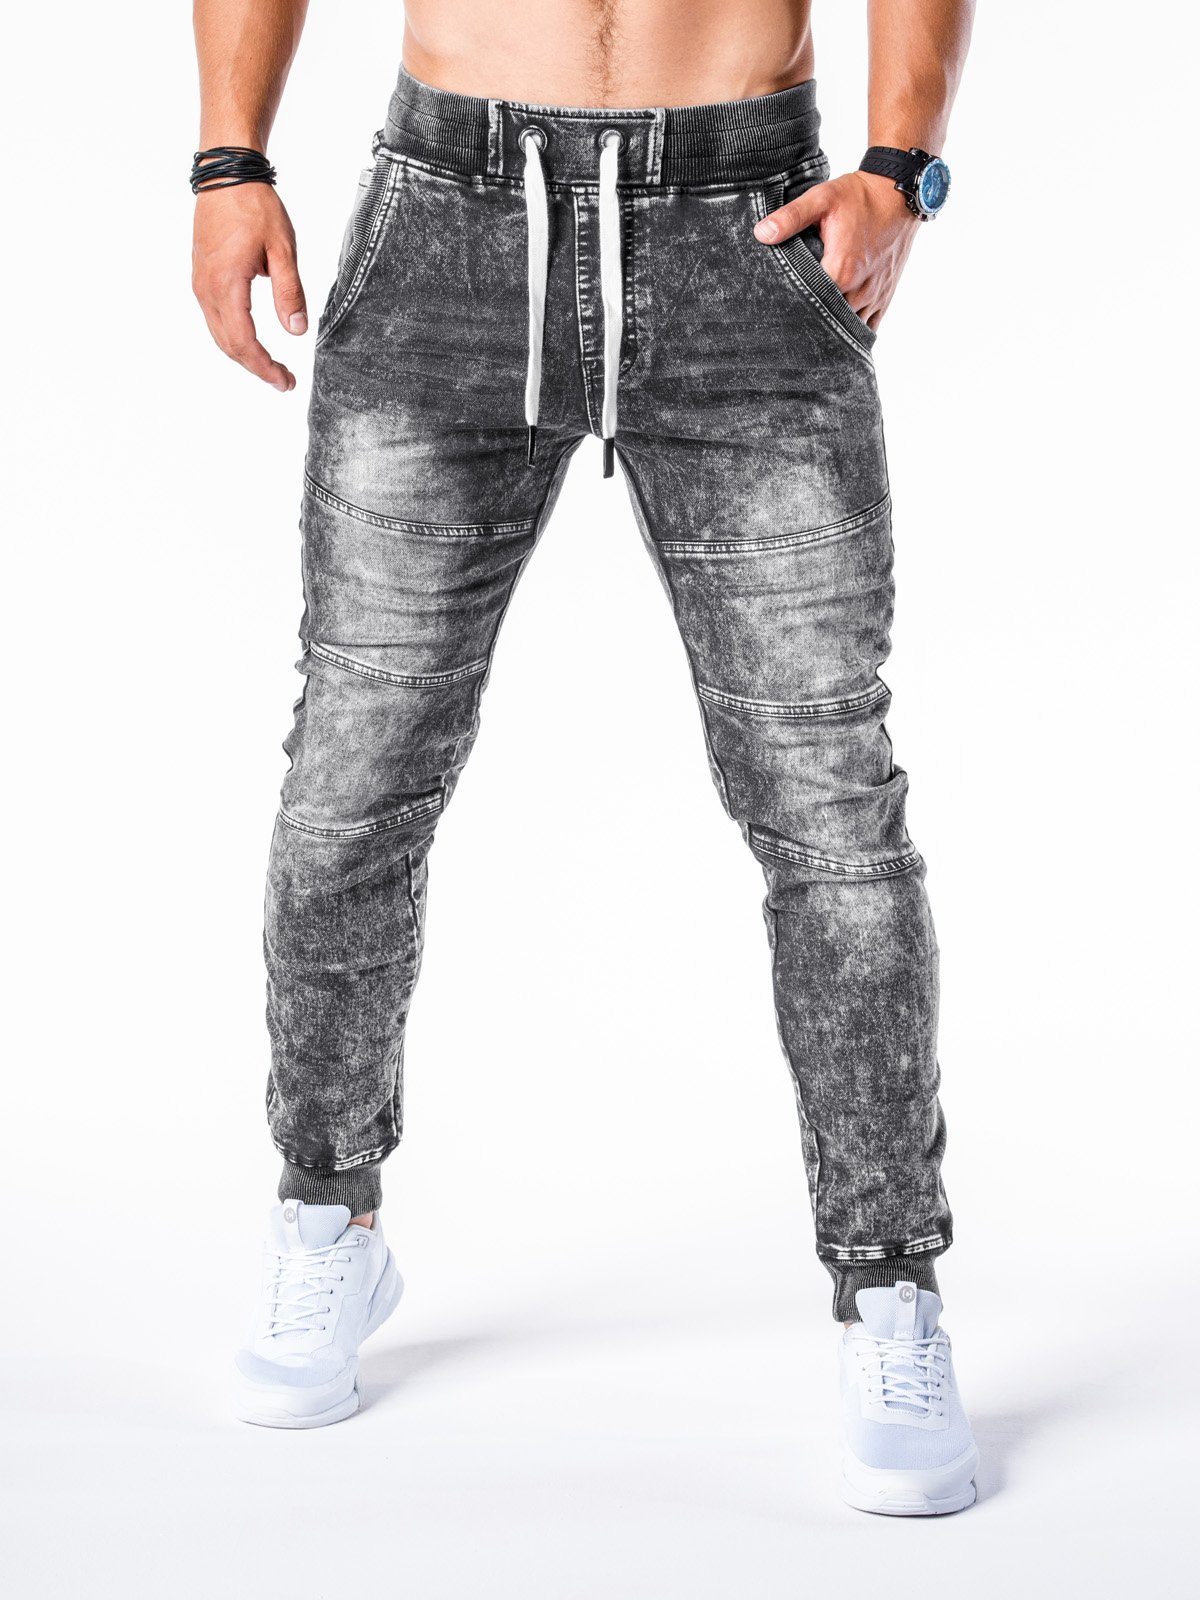 Pas op as kip Men's jeans joggers - dark grey P551 | MODONE wholesale - Clothing For Men